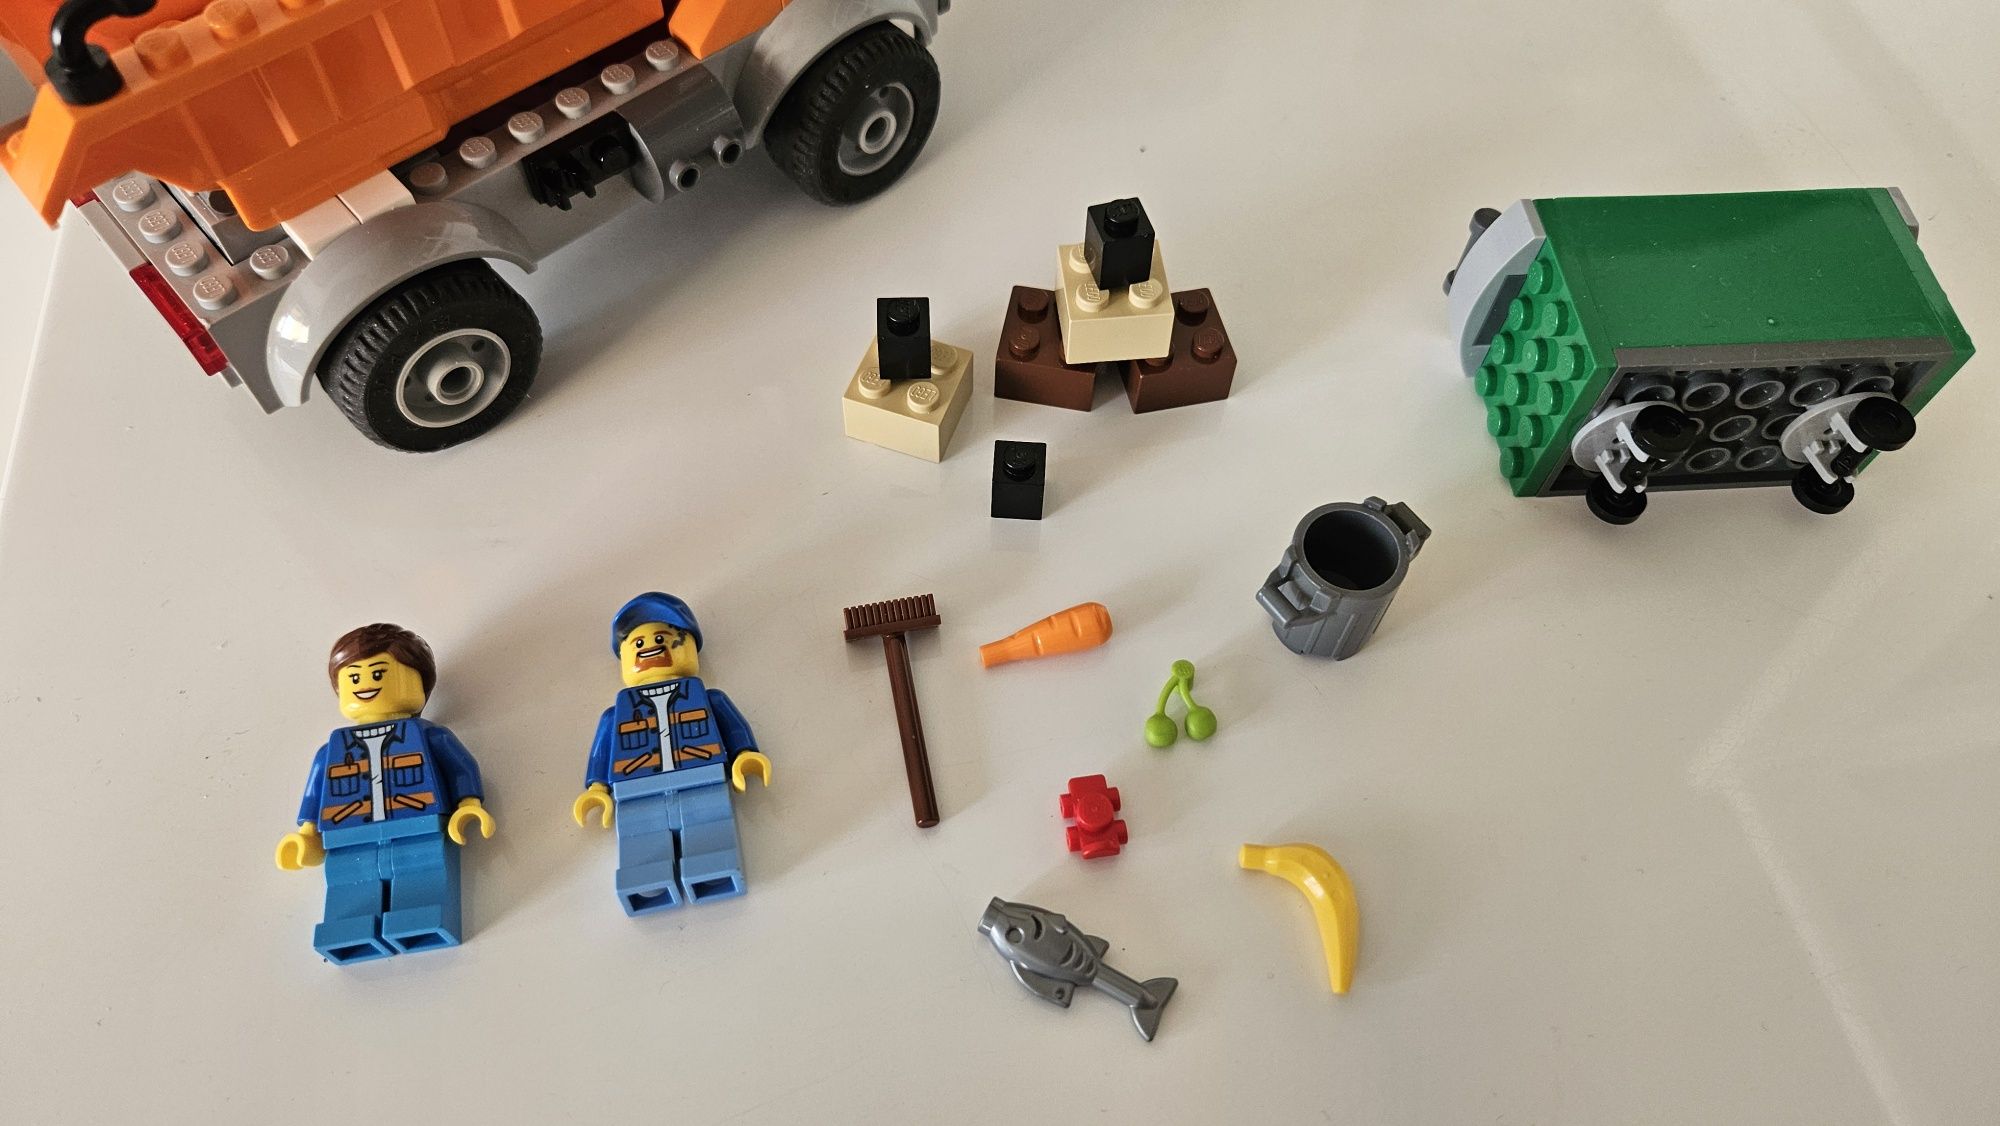 Lego 60220 City Śmieciarka